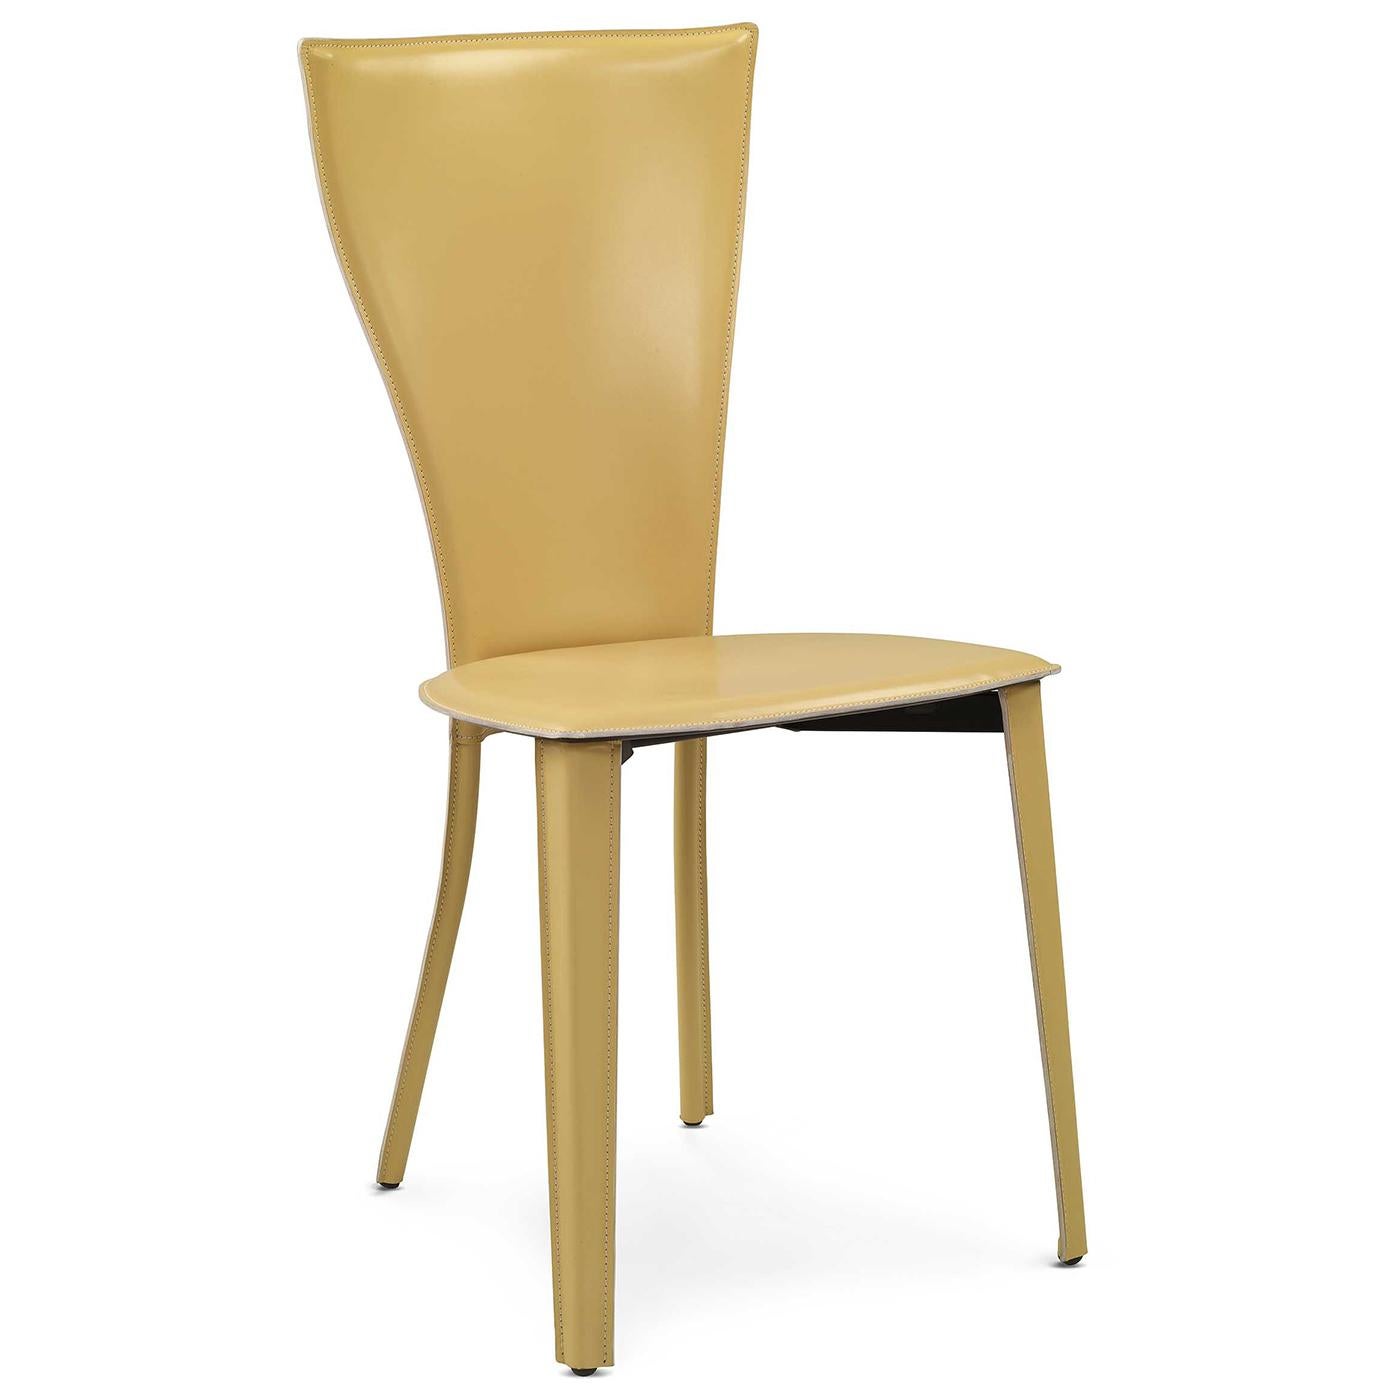 Cette chaise à quatre pieds, à cadre en acier, est entièrement recouverte de cuir de couleur corde. Les lignes sinueuses et embrassantes de son assise et de son dossier créent une silhouette tendance, tandis que la forme de son haut dossier distinct